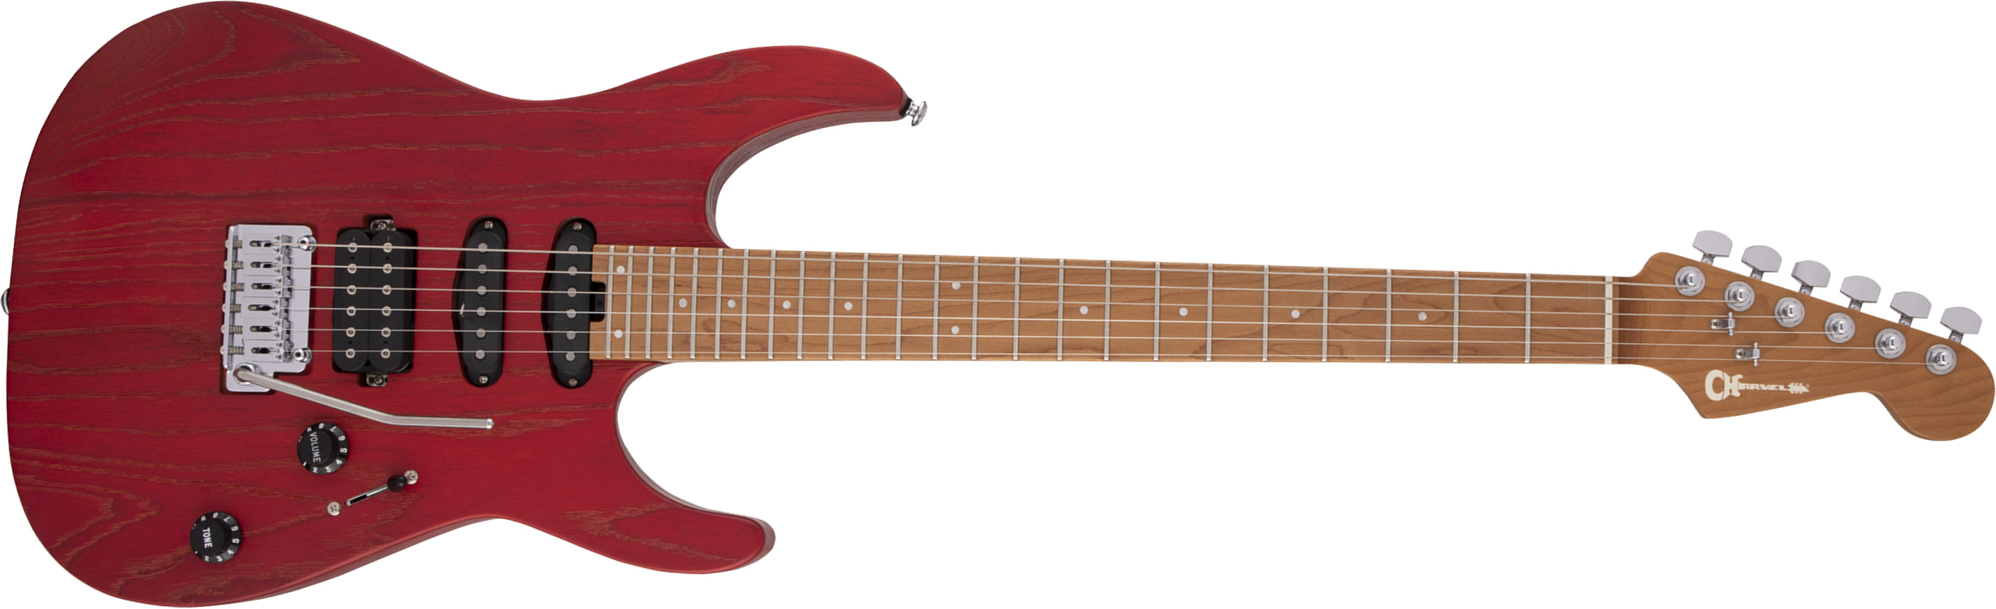 Charvel Dinky Dk24 Hss 2pt Cm Ash Pro-mod Seymour Duncan Trem Mn - Red Ash - Str shape electric guitar - Main picture